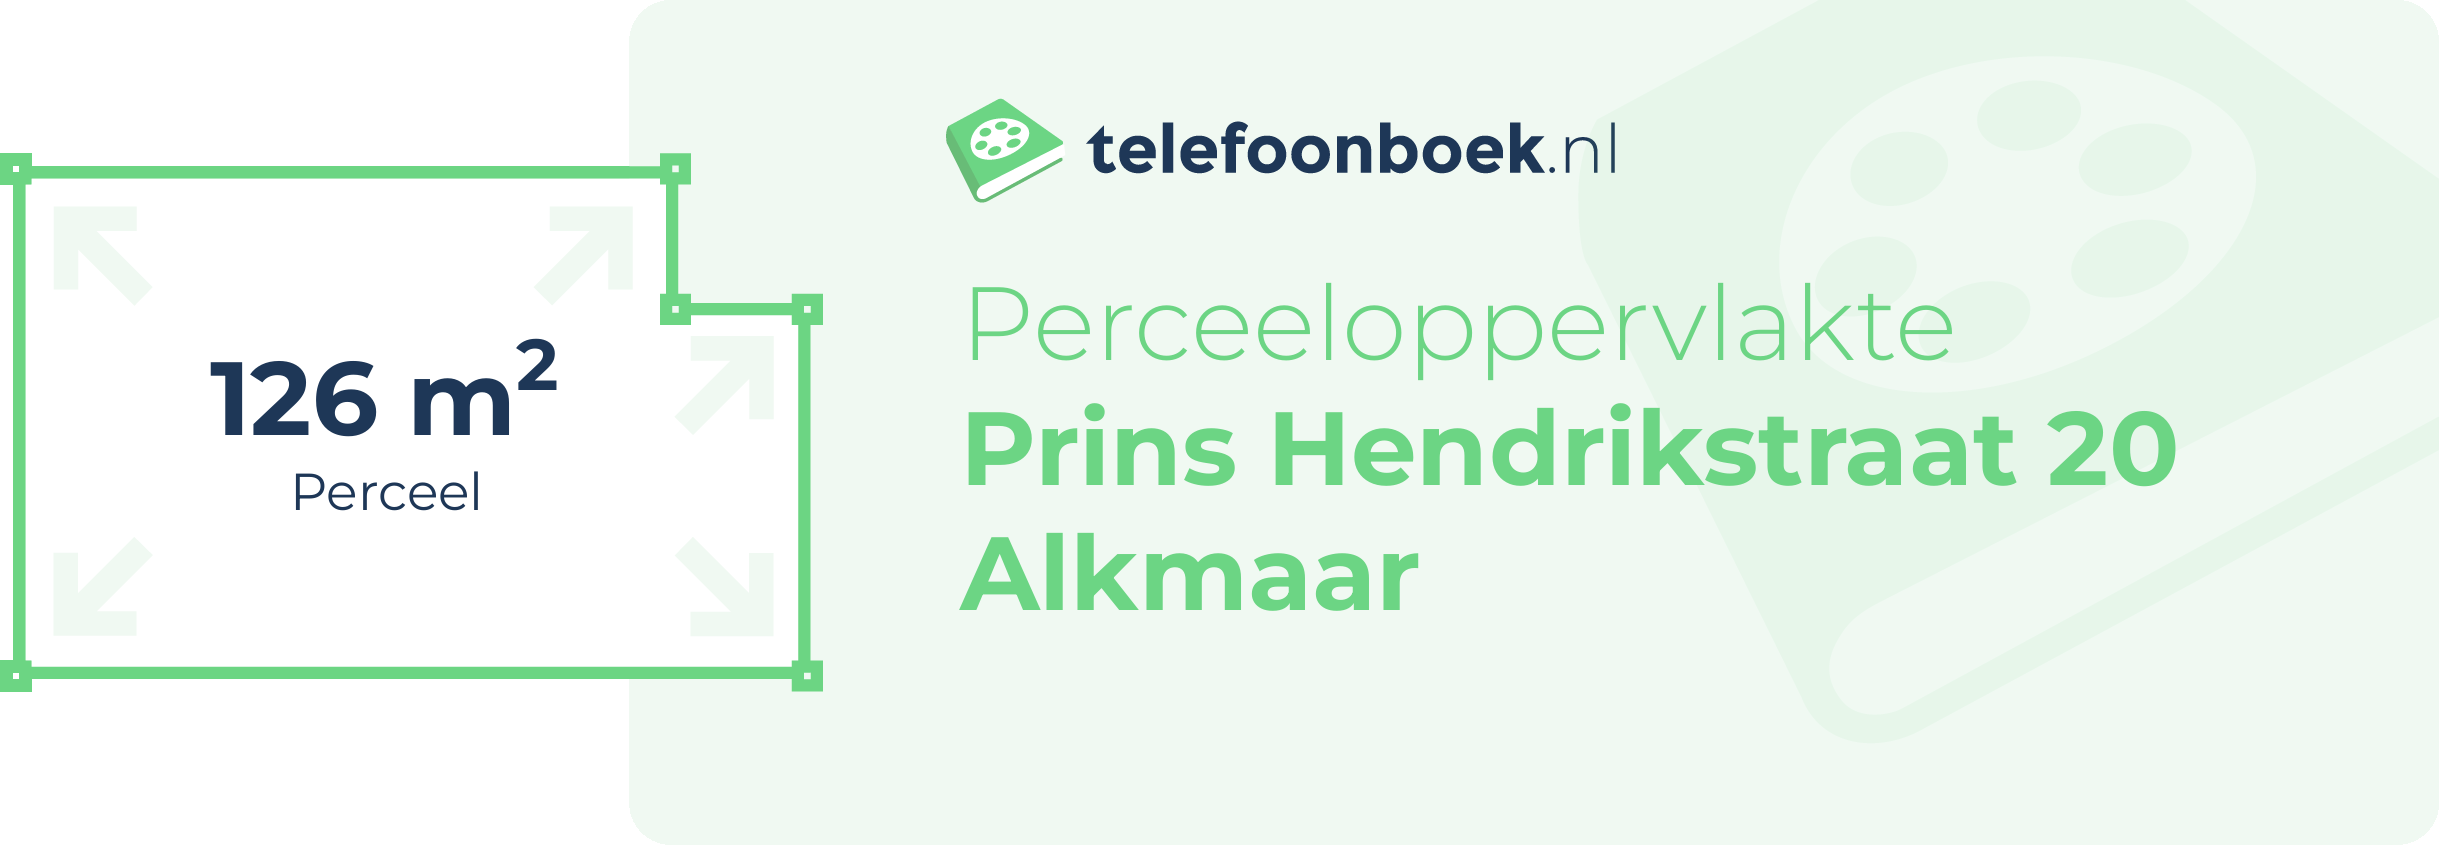 Perceeloppervlakte Prins Hendrikstraat 20 Alkmaar